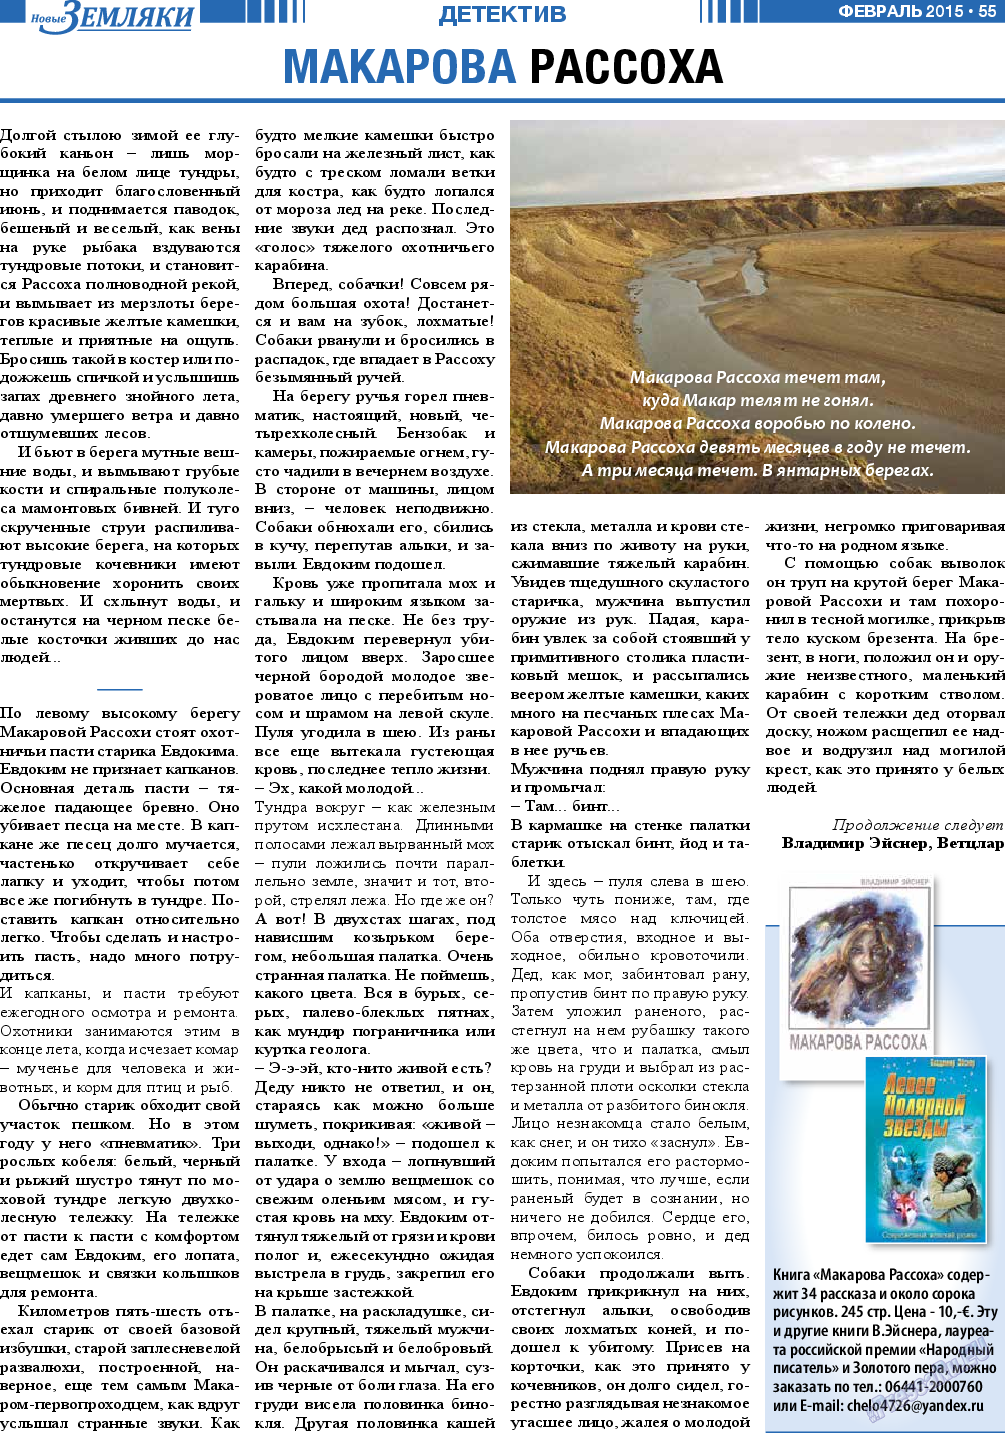 Новые Земляки (газета). 2015 год, номер 2, стр. 55